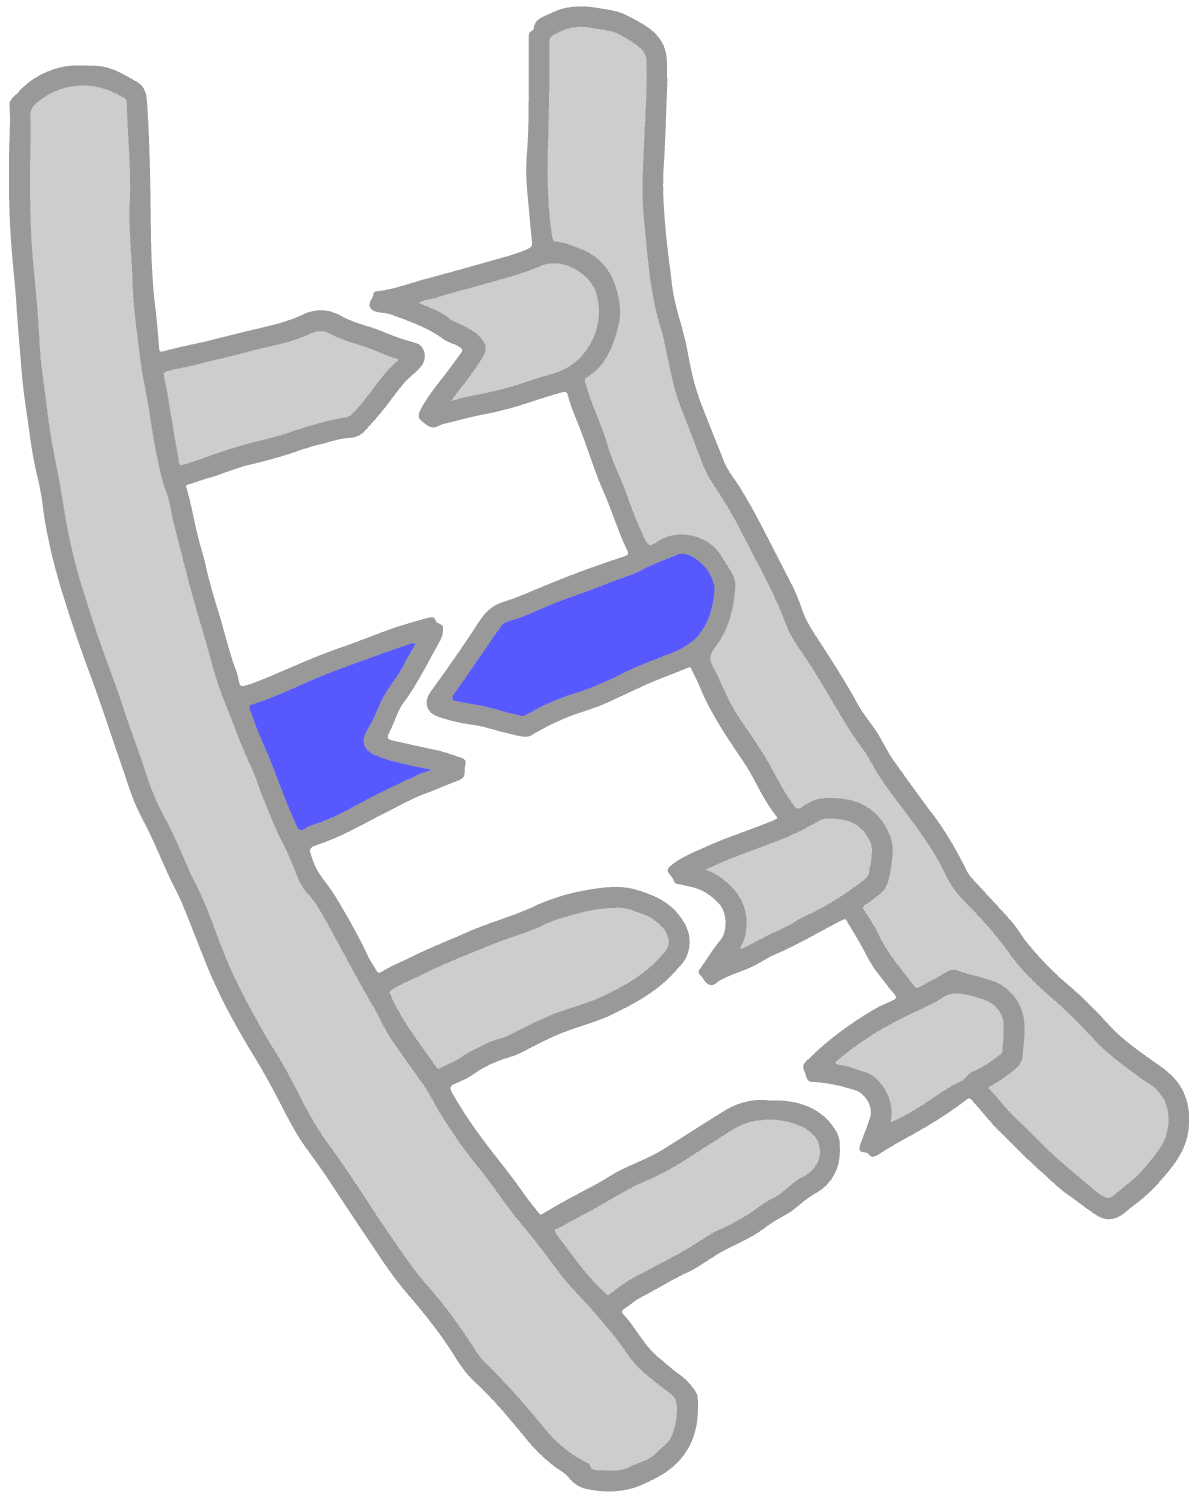 Imagen de bases de ADN azules emparejadas entre sí